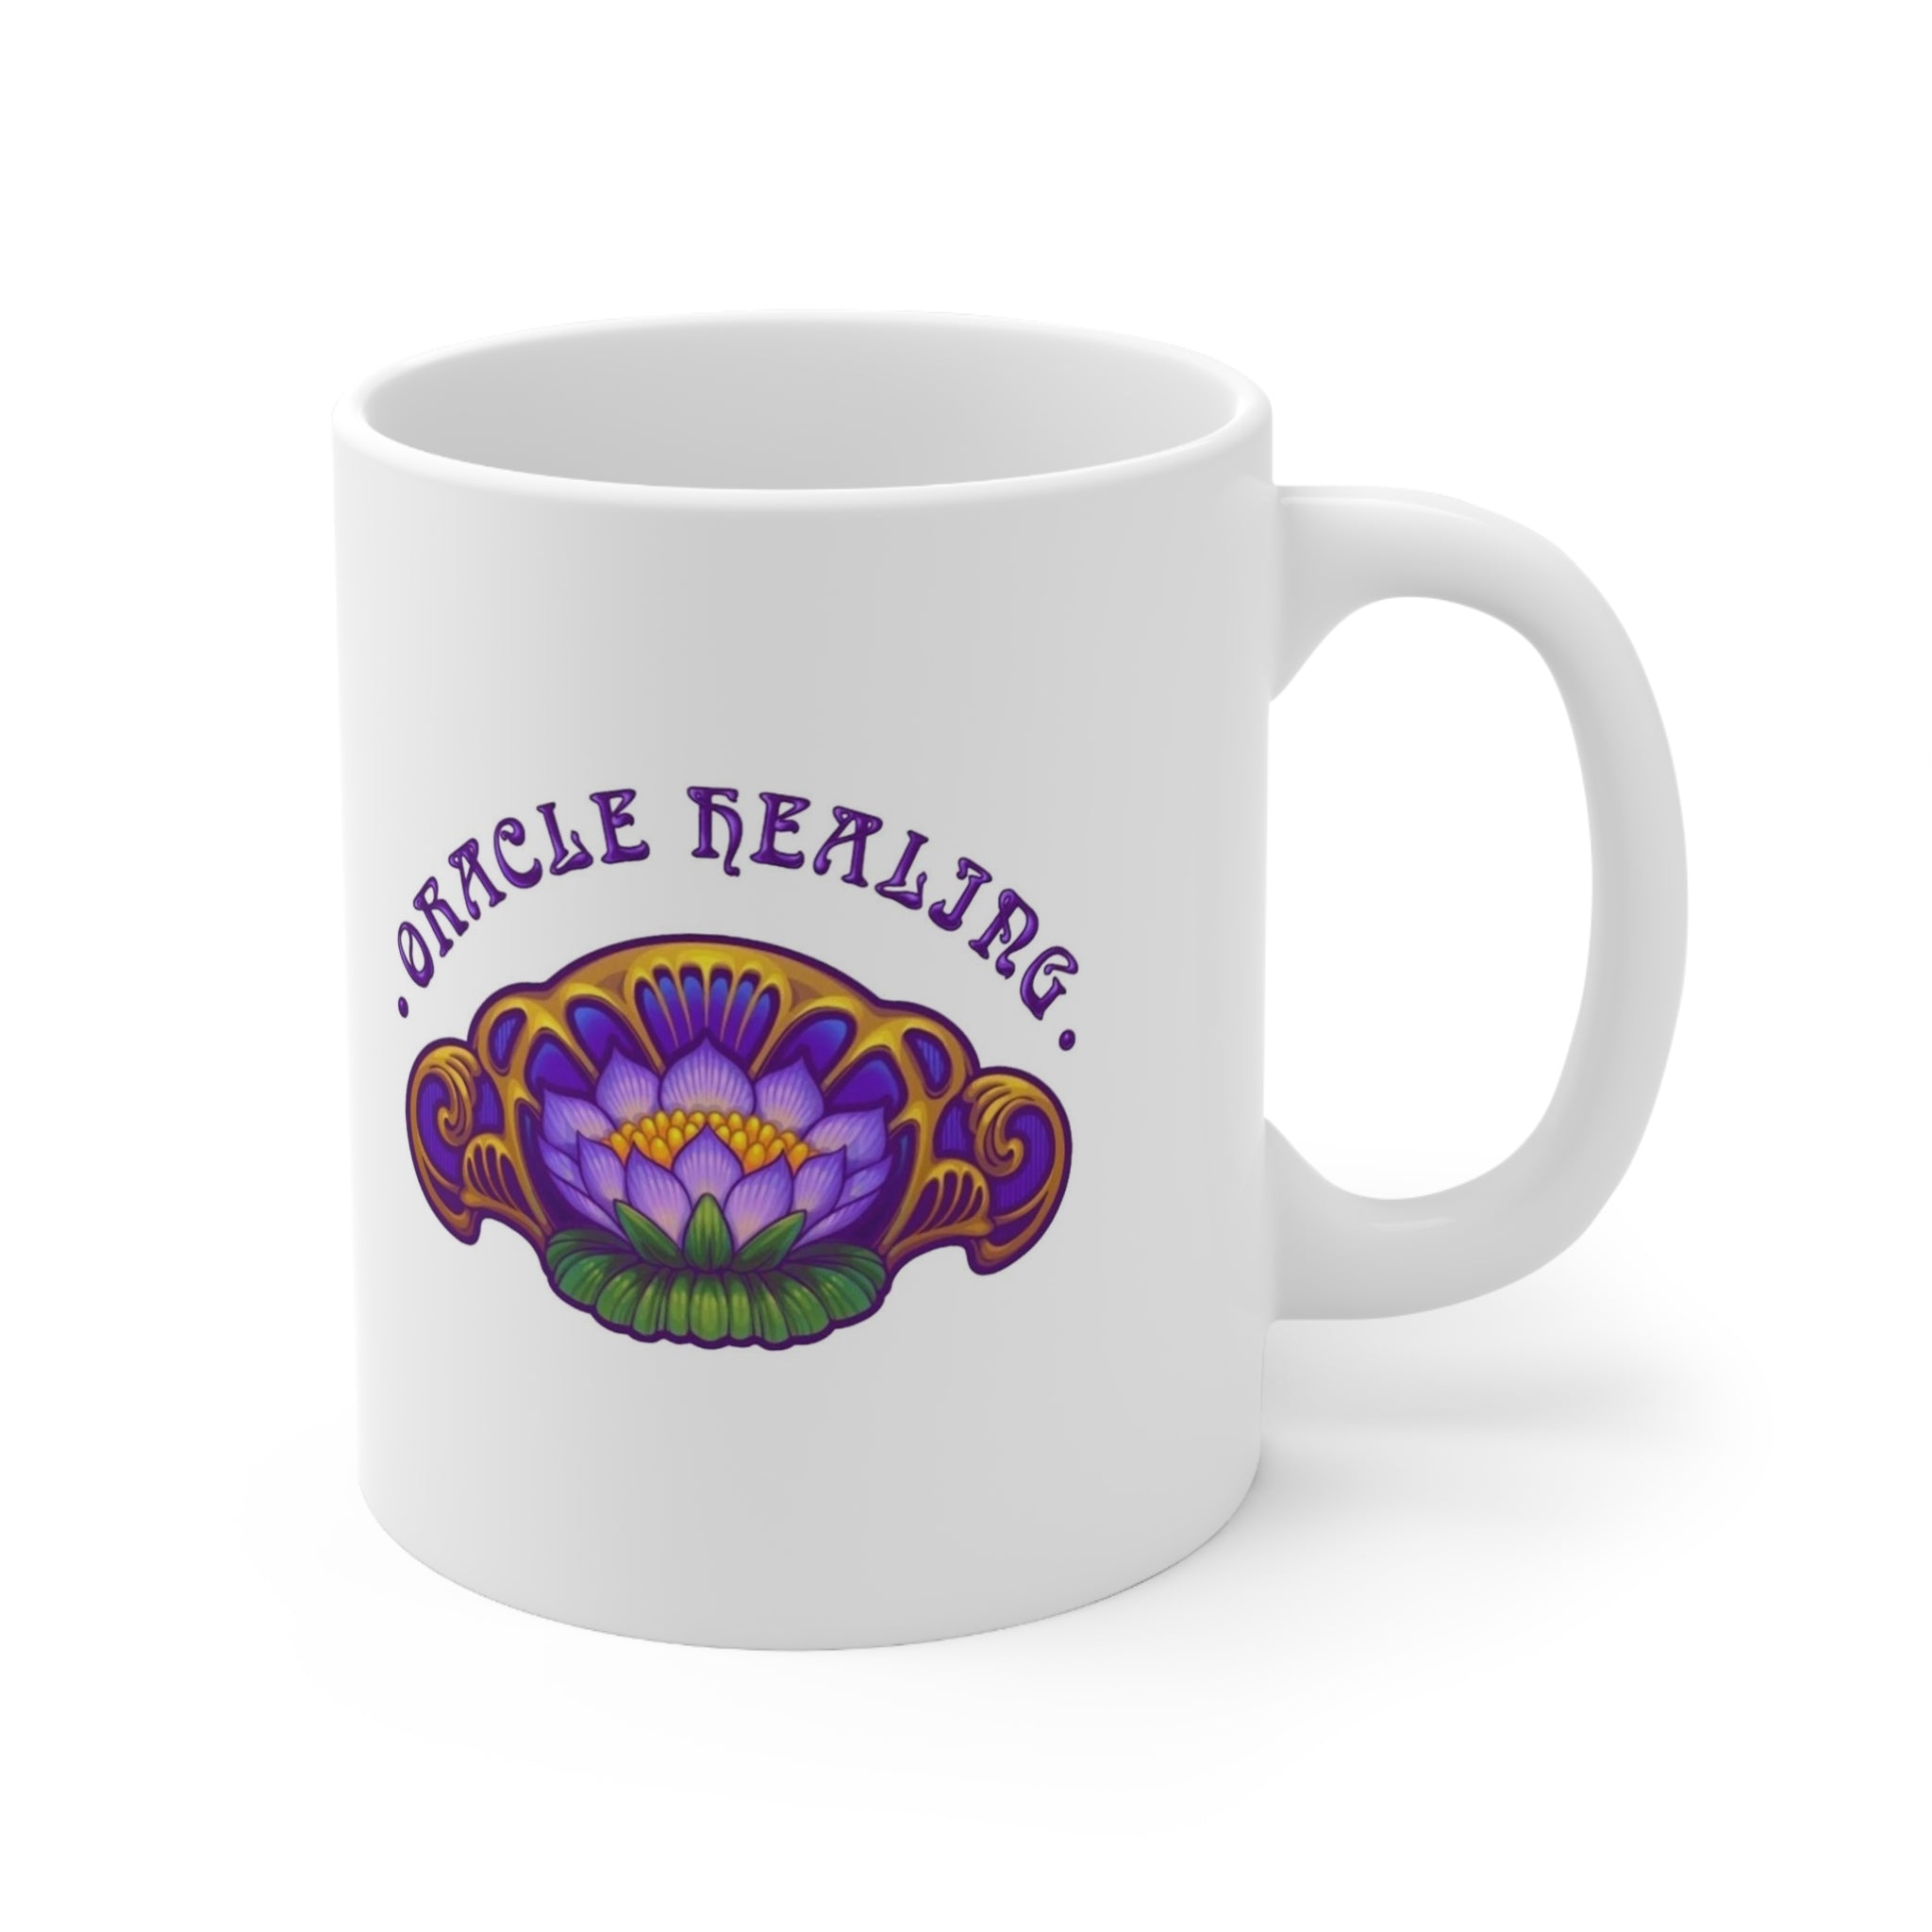 Oracle Healing Mug